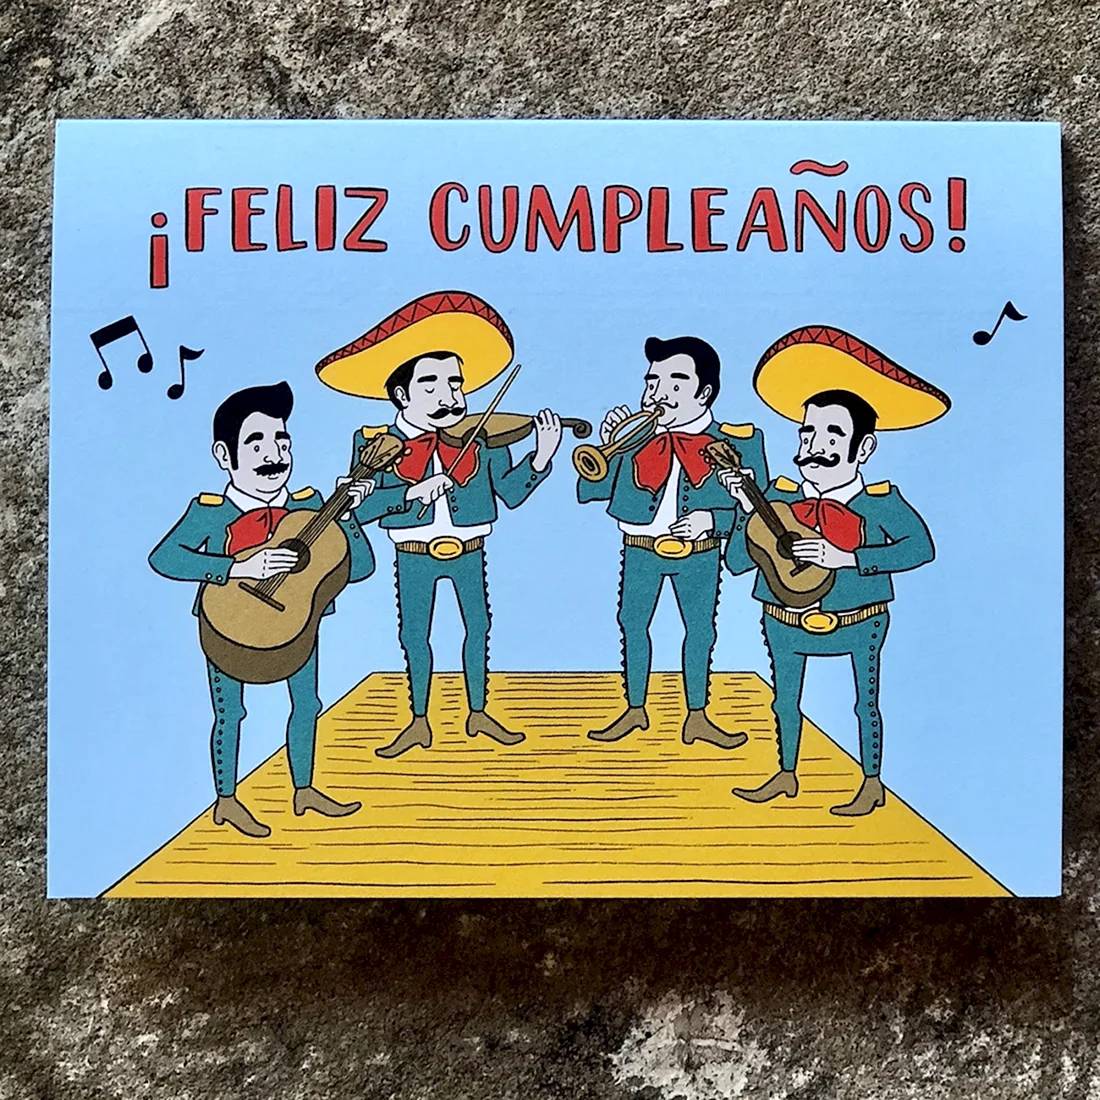 Поздравление с днем рождения на испанском